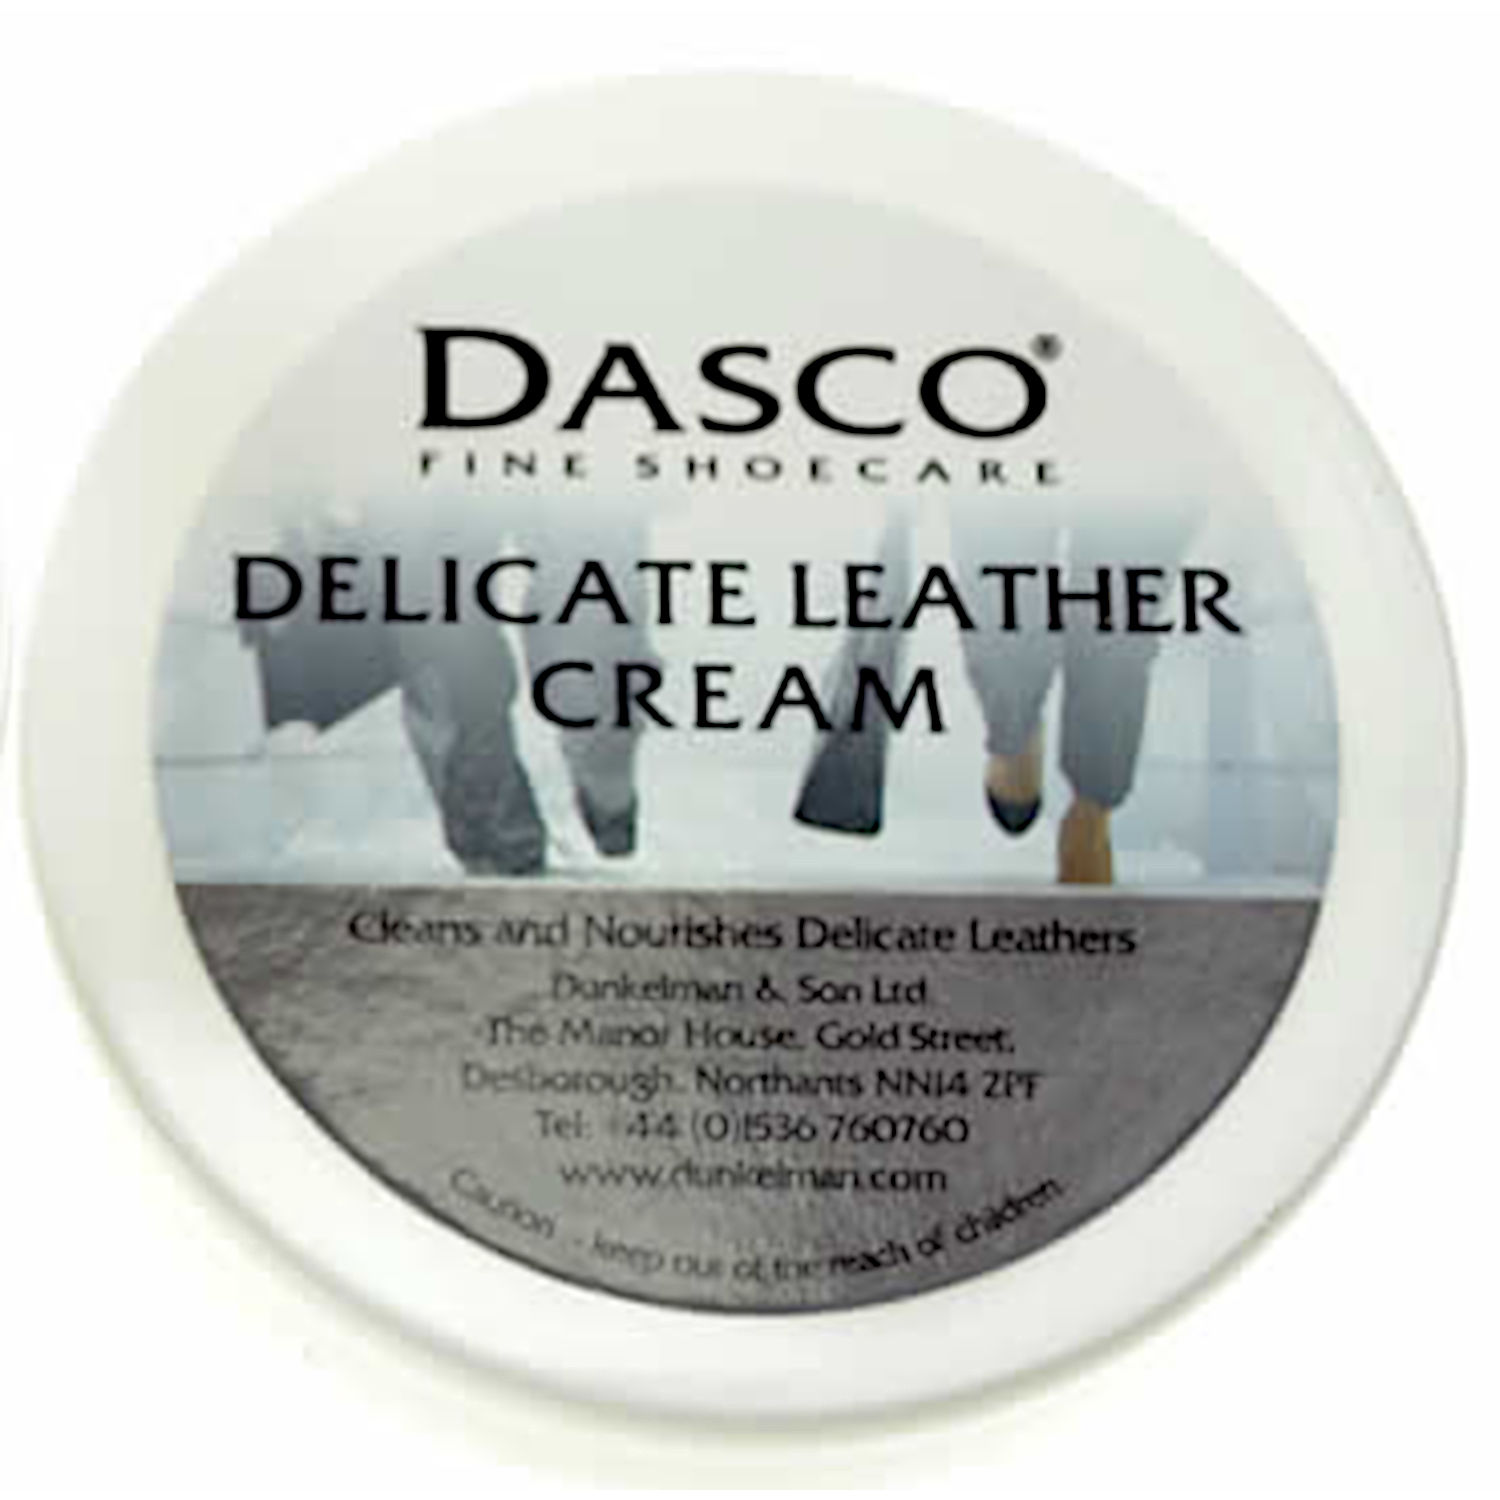 Dasco Delicate Leather Cream